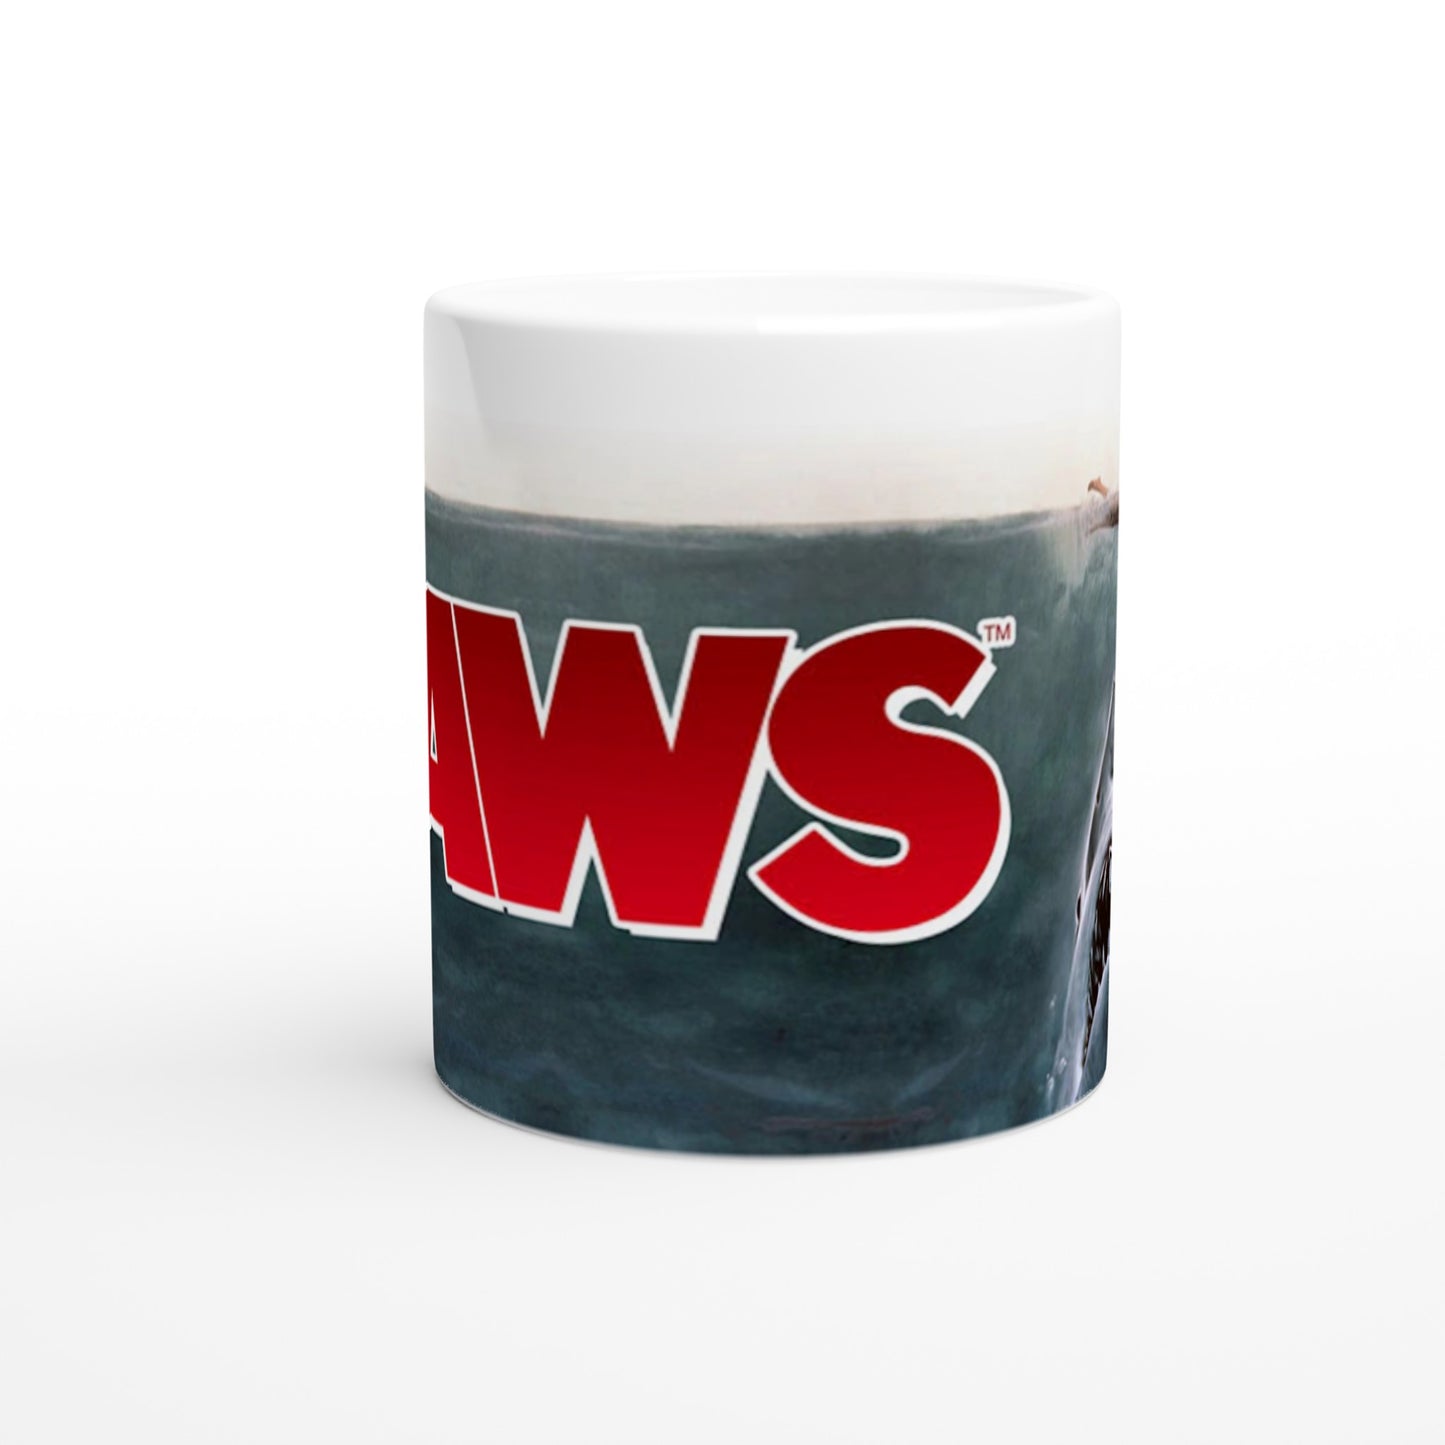 Offizielle JAWS Tasse – Jaws Surfer – 330 ml weiße Tasse